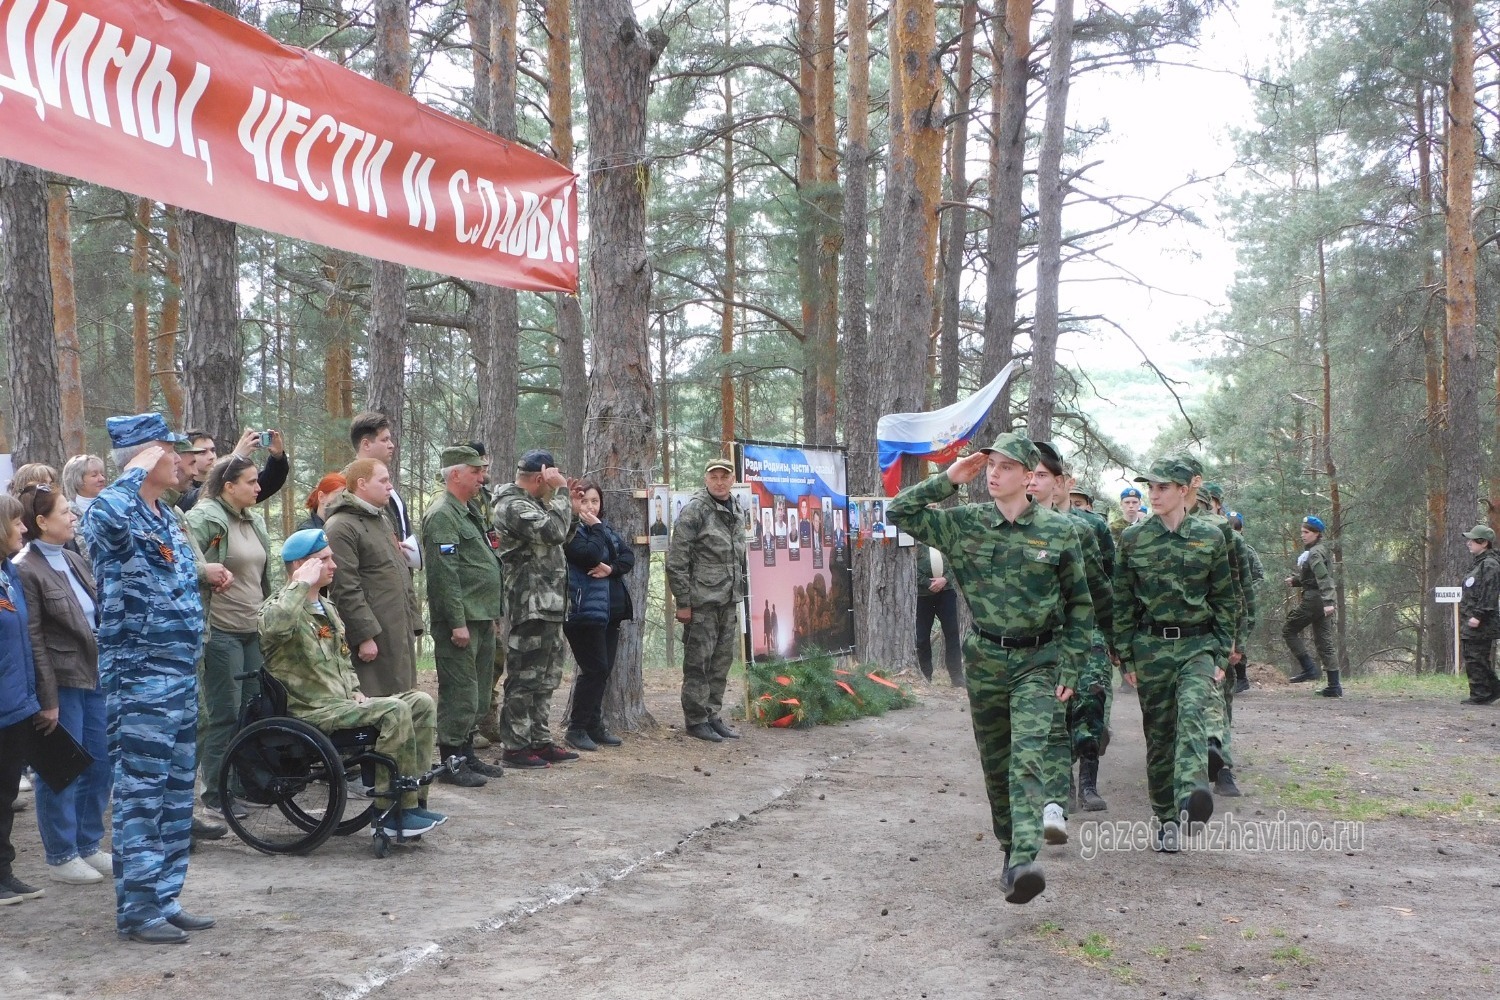 Чеканя шаг, участники военно-патриотической игры прошли по импровизированному плацу